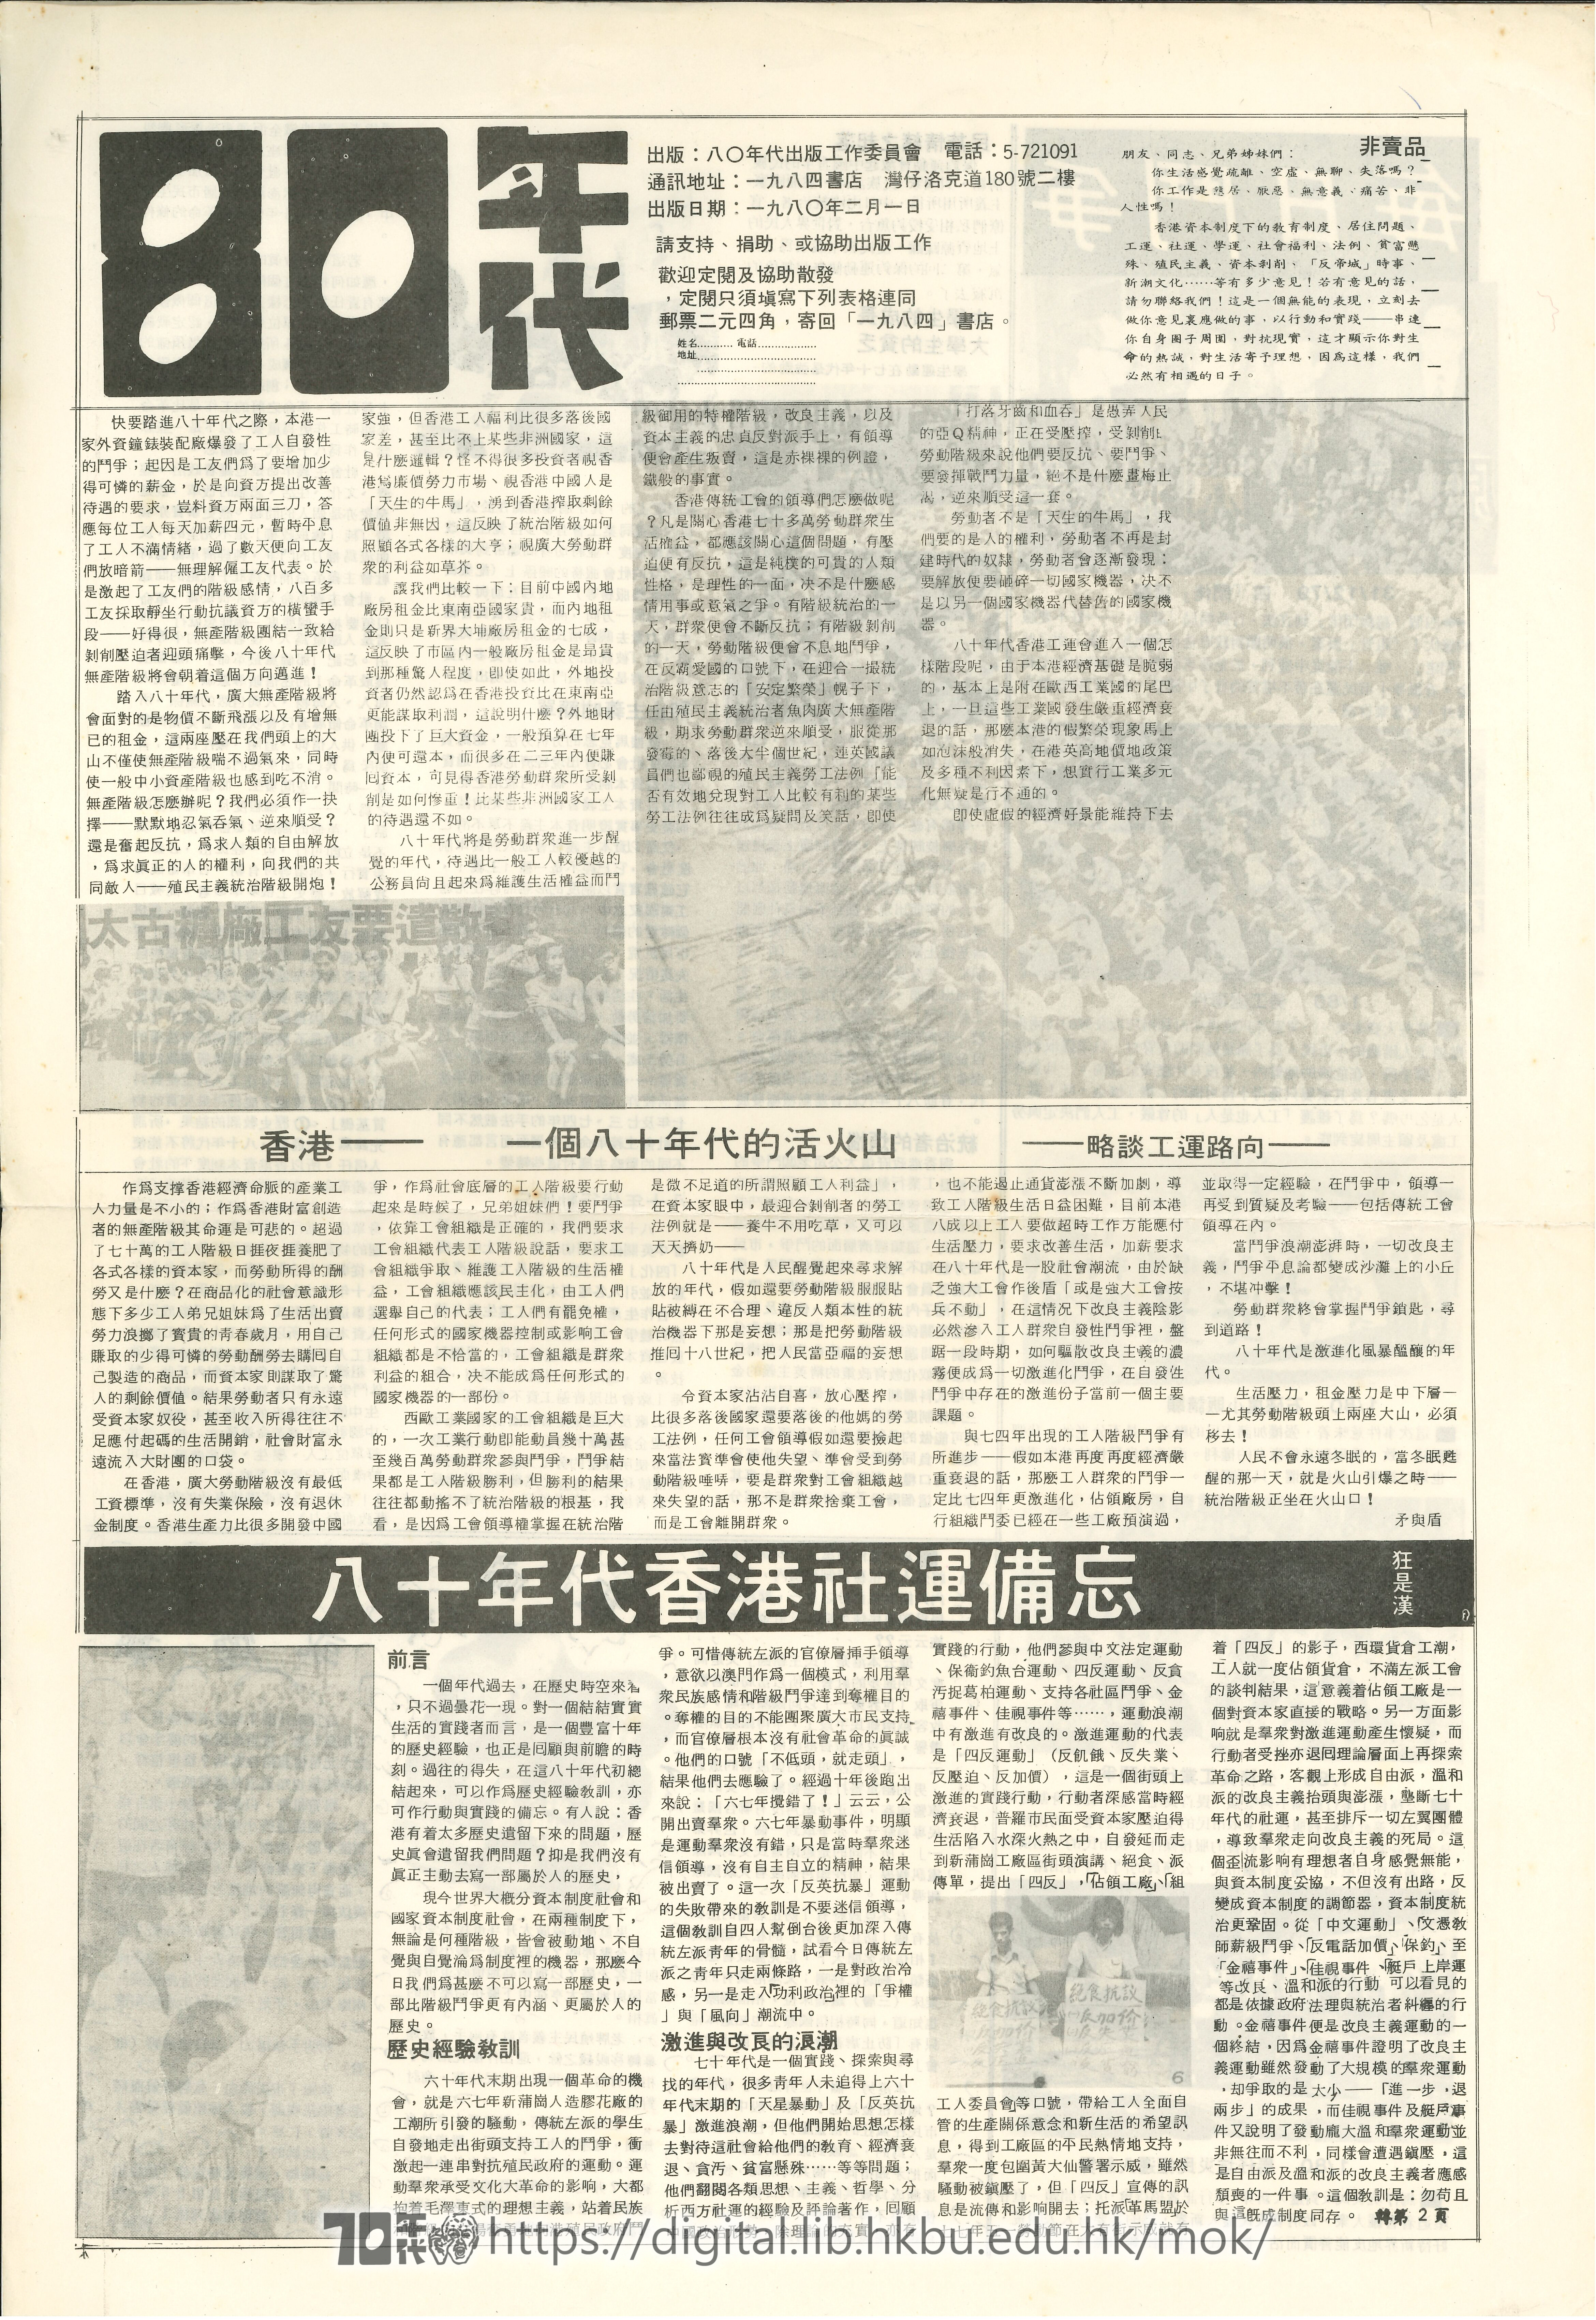   香港——一個八十年代的活火山 略談工運路向 矛與盾 